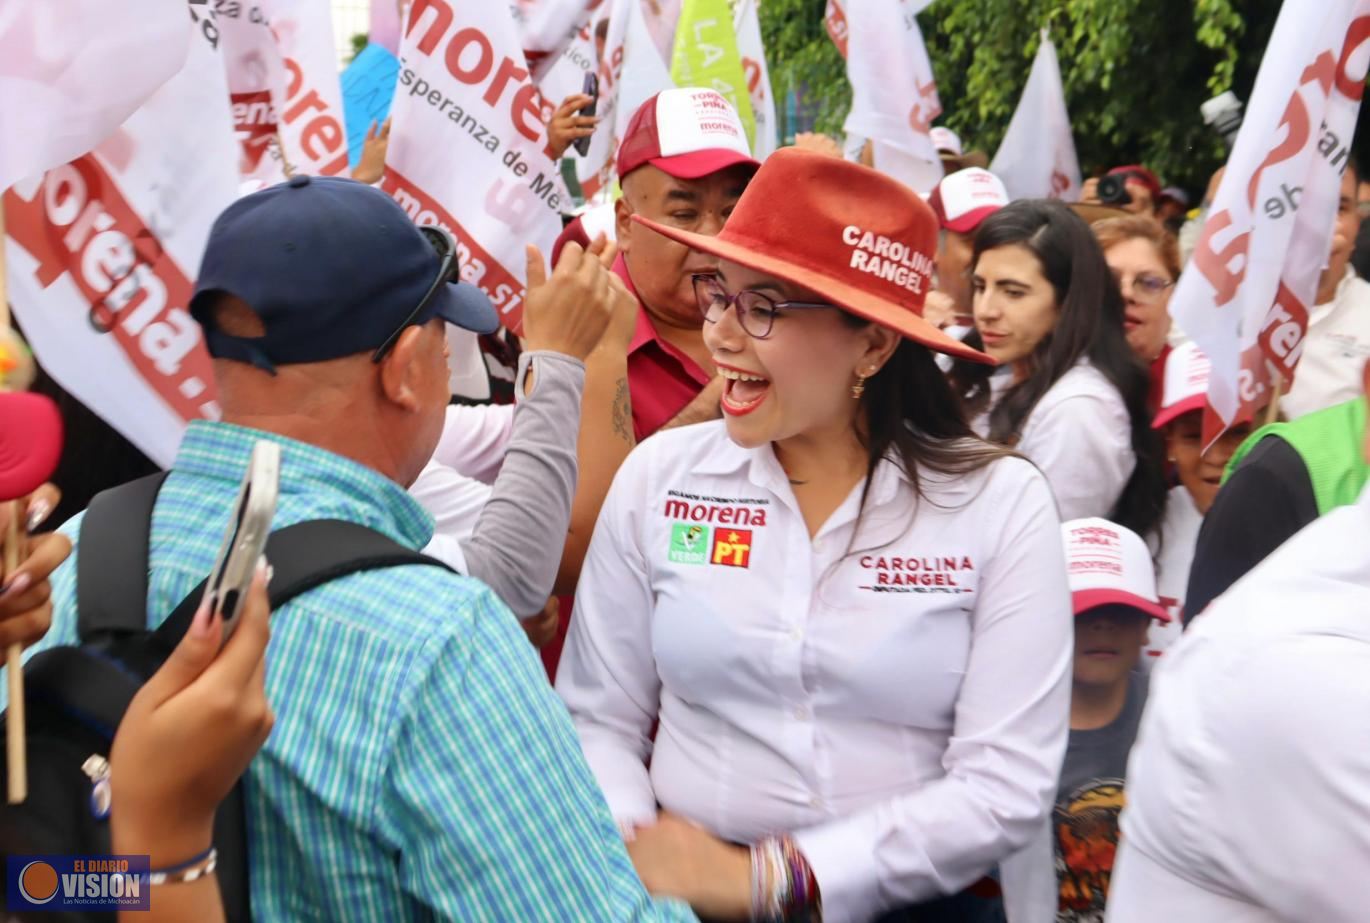 Con austeridad, trabajo territorial y amor al pueblo, concluye campaña de Carolina Rangel